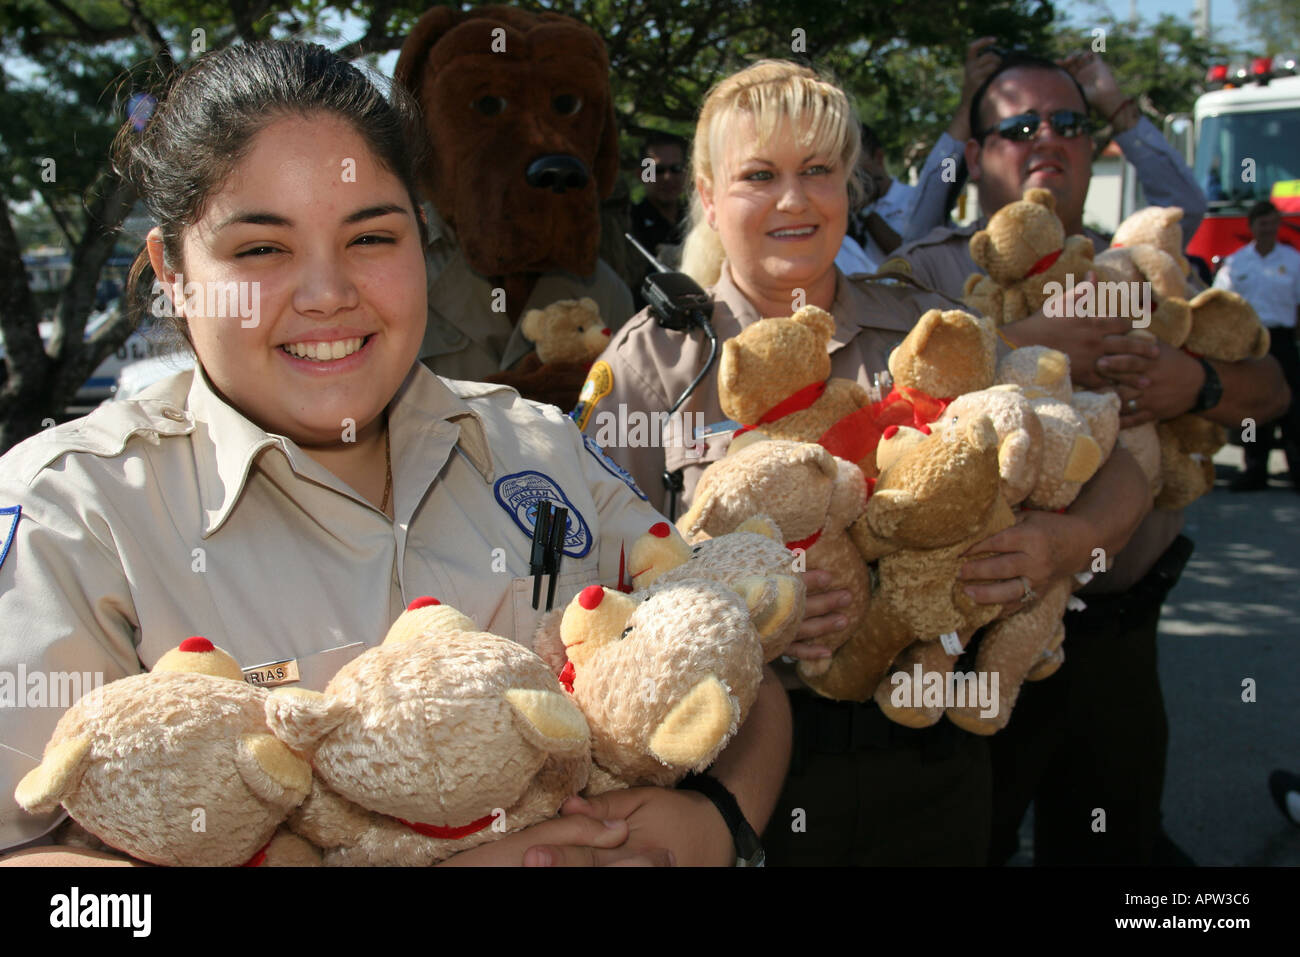 Miami Florida, festa annuale delle foche pasquali, cadetto di beneficenza dell'Ordine fraterno della polizia, ufficiale, orsi regalo, FL121404108 Foto Stock